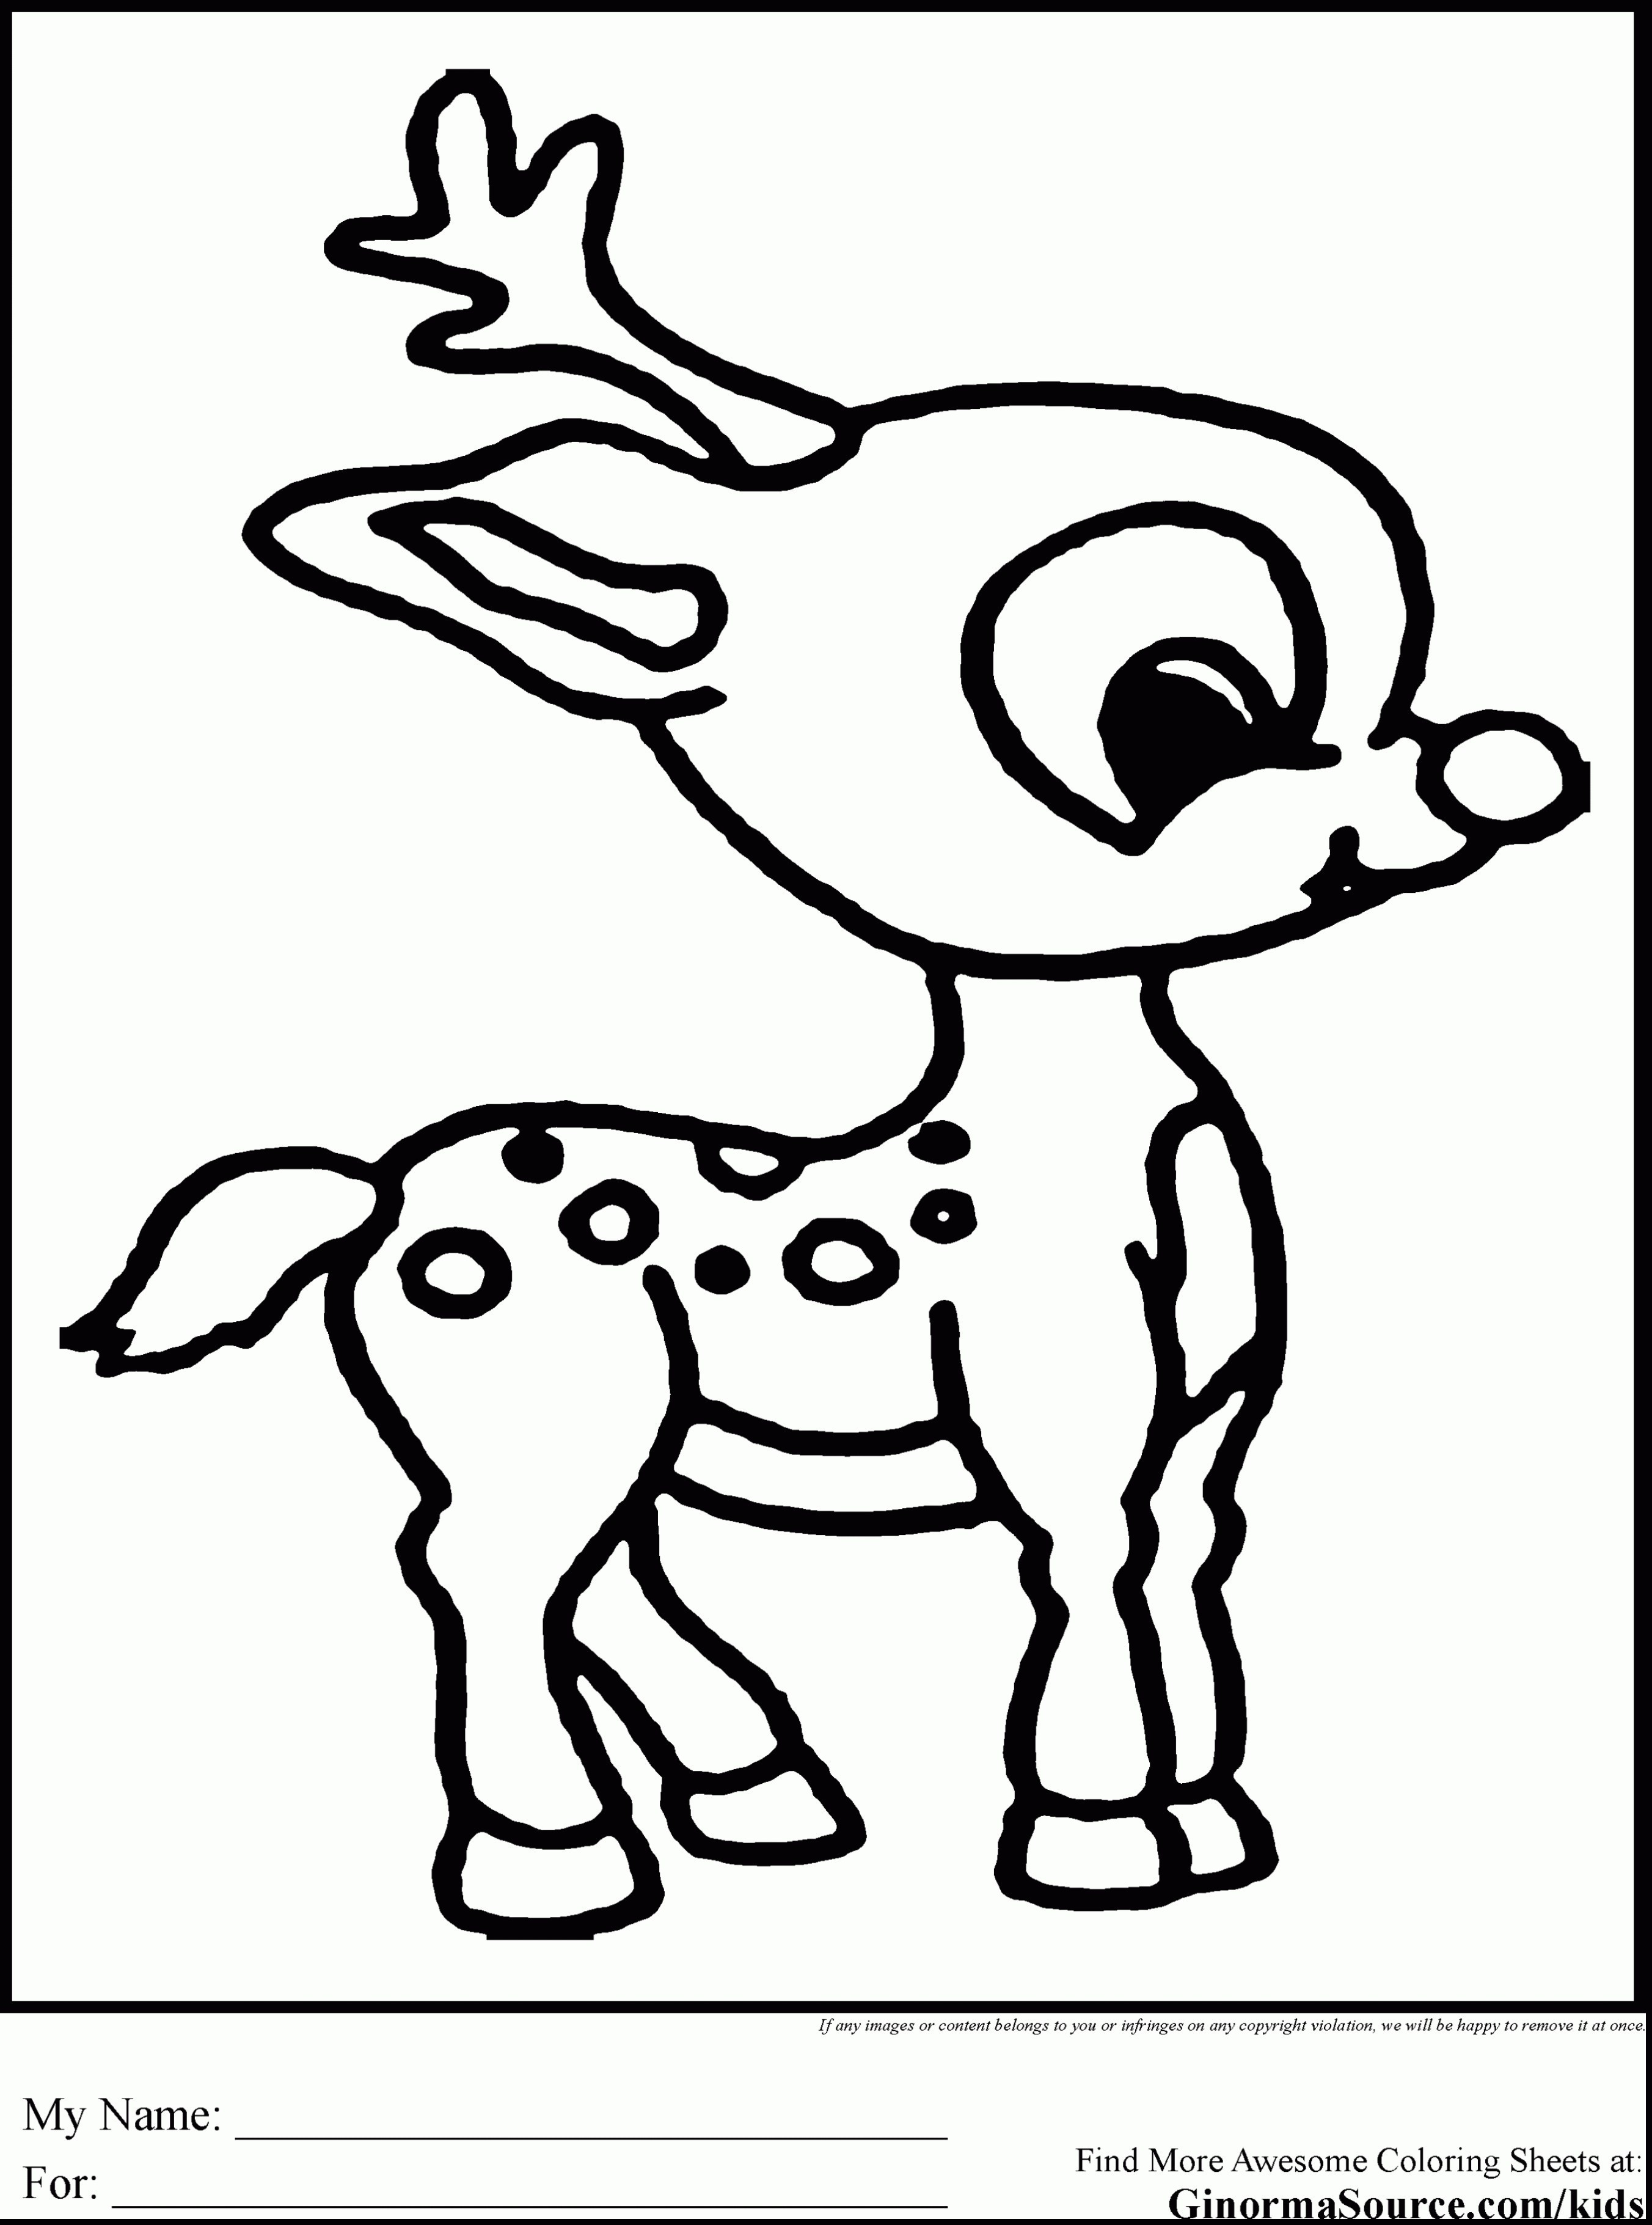 Reindeer Cartoon Coloring Pages at GetDrawings | Free download